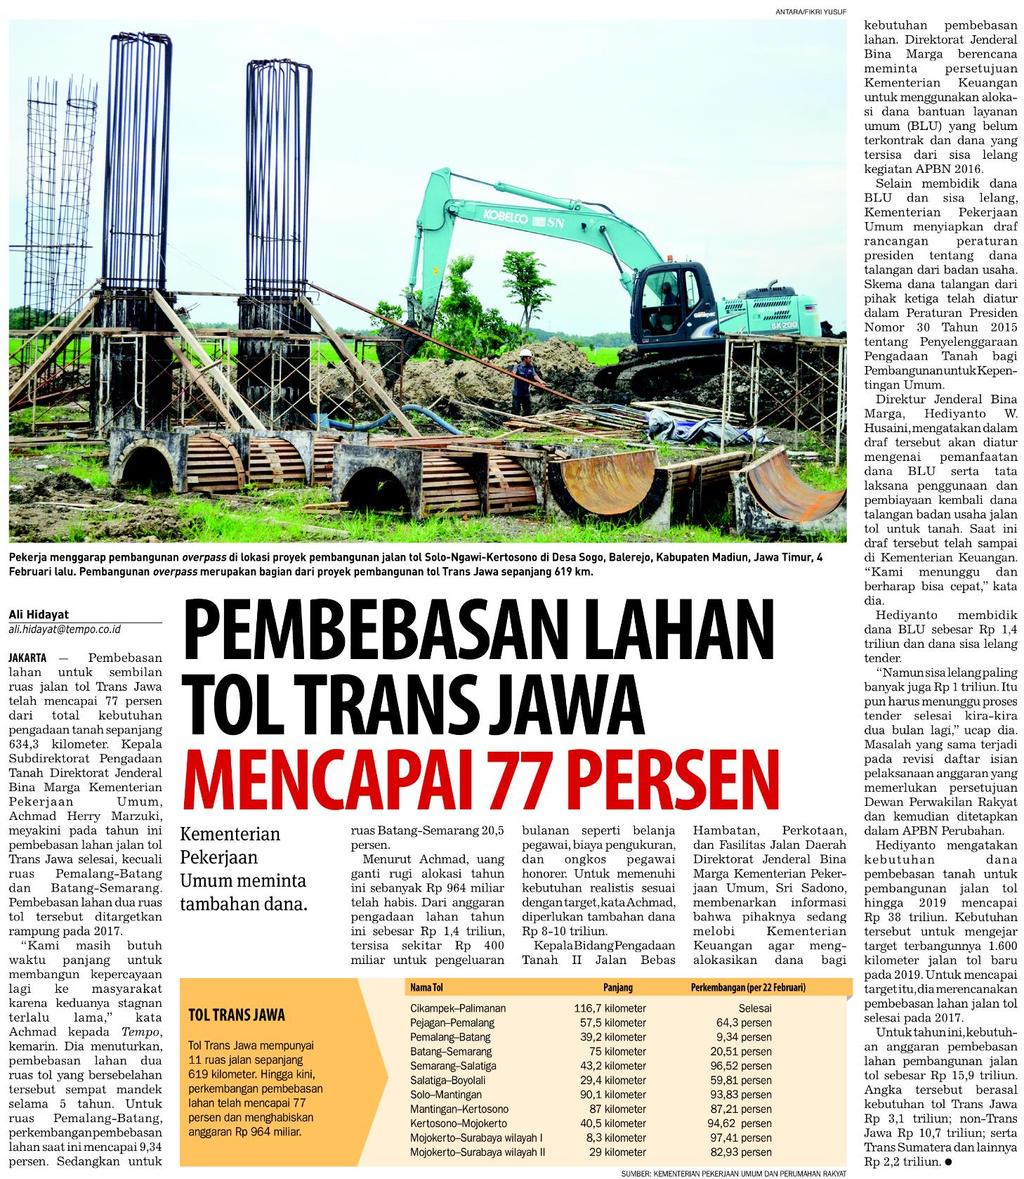 Judul Pembebasan Lahan Tol Trans Jawa Mencapai 77 Persen Tanggal Media Koran Tempo (Halaman 13) Pembebasan dari total kebutuhan 634,3 kilometer sudah